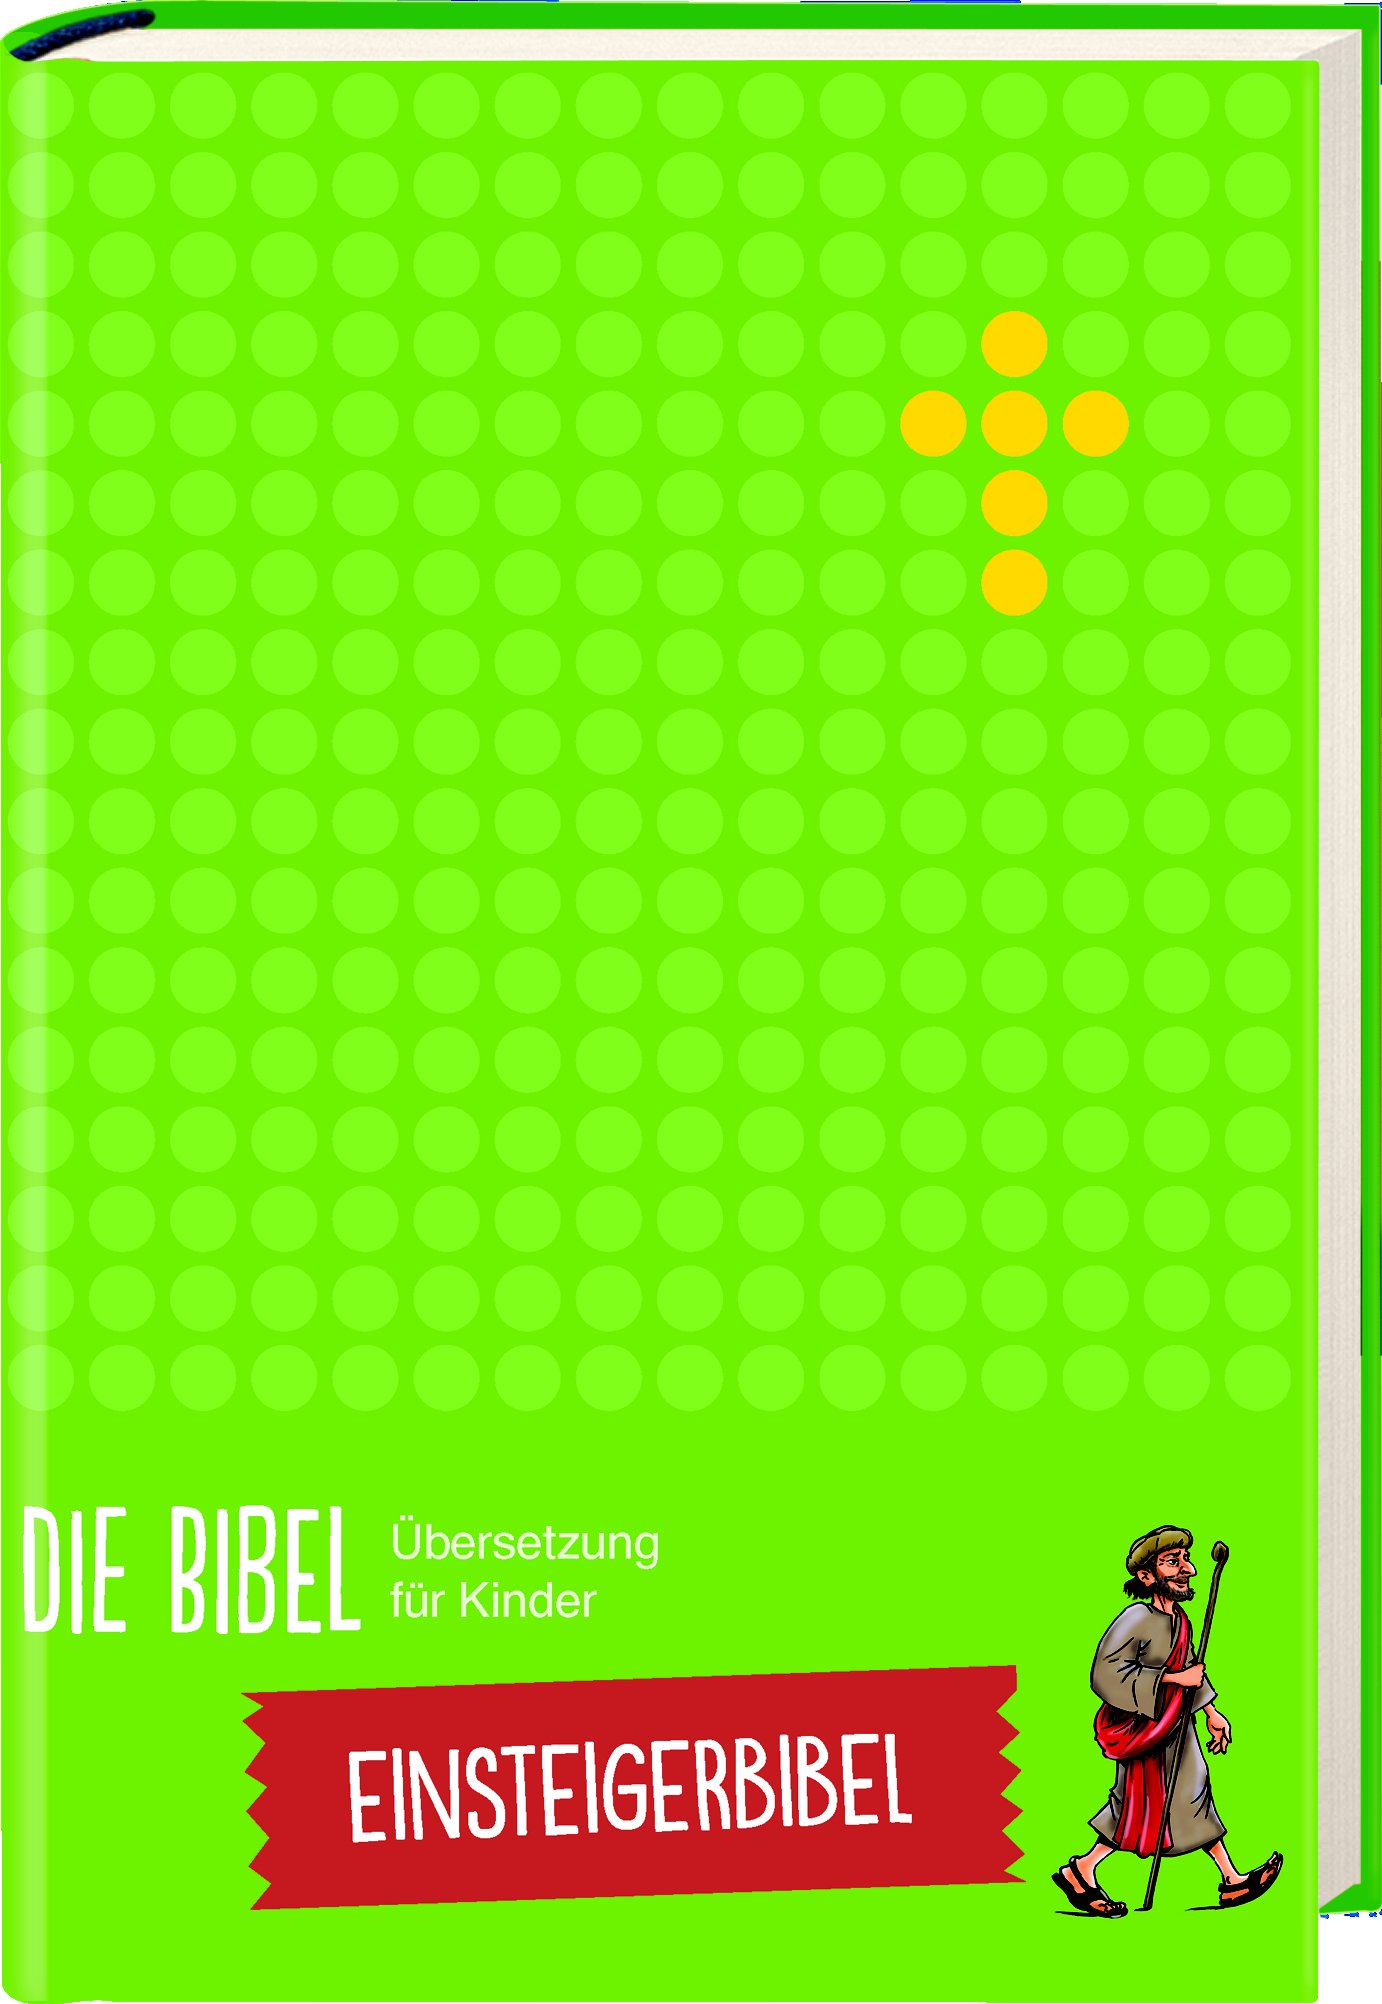 Die Bibel. Übersetzung für Kinder - Einsteigerbibel - Cover